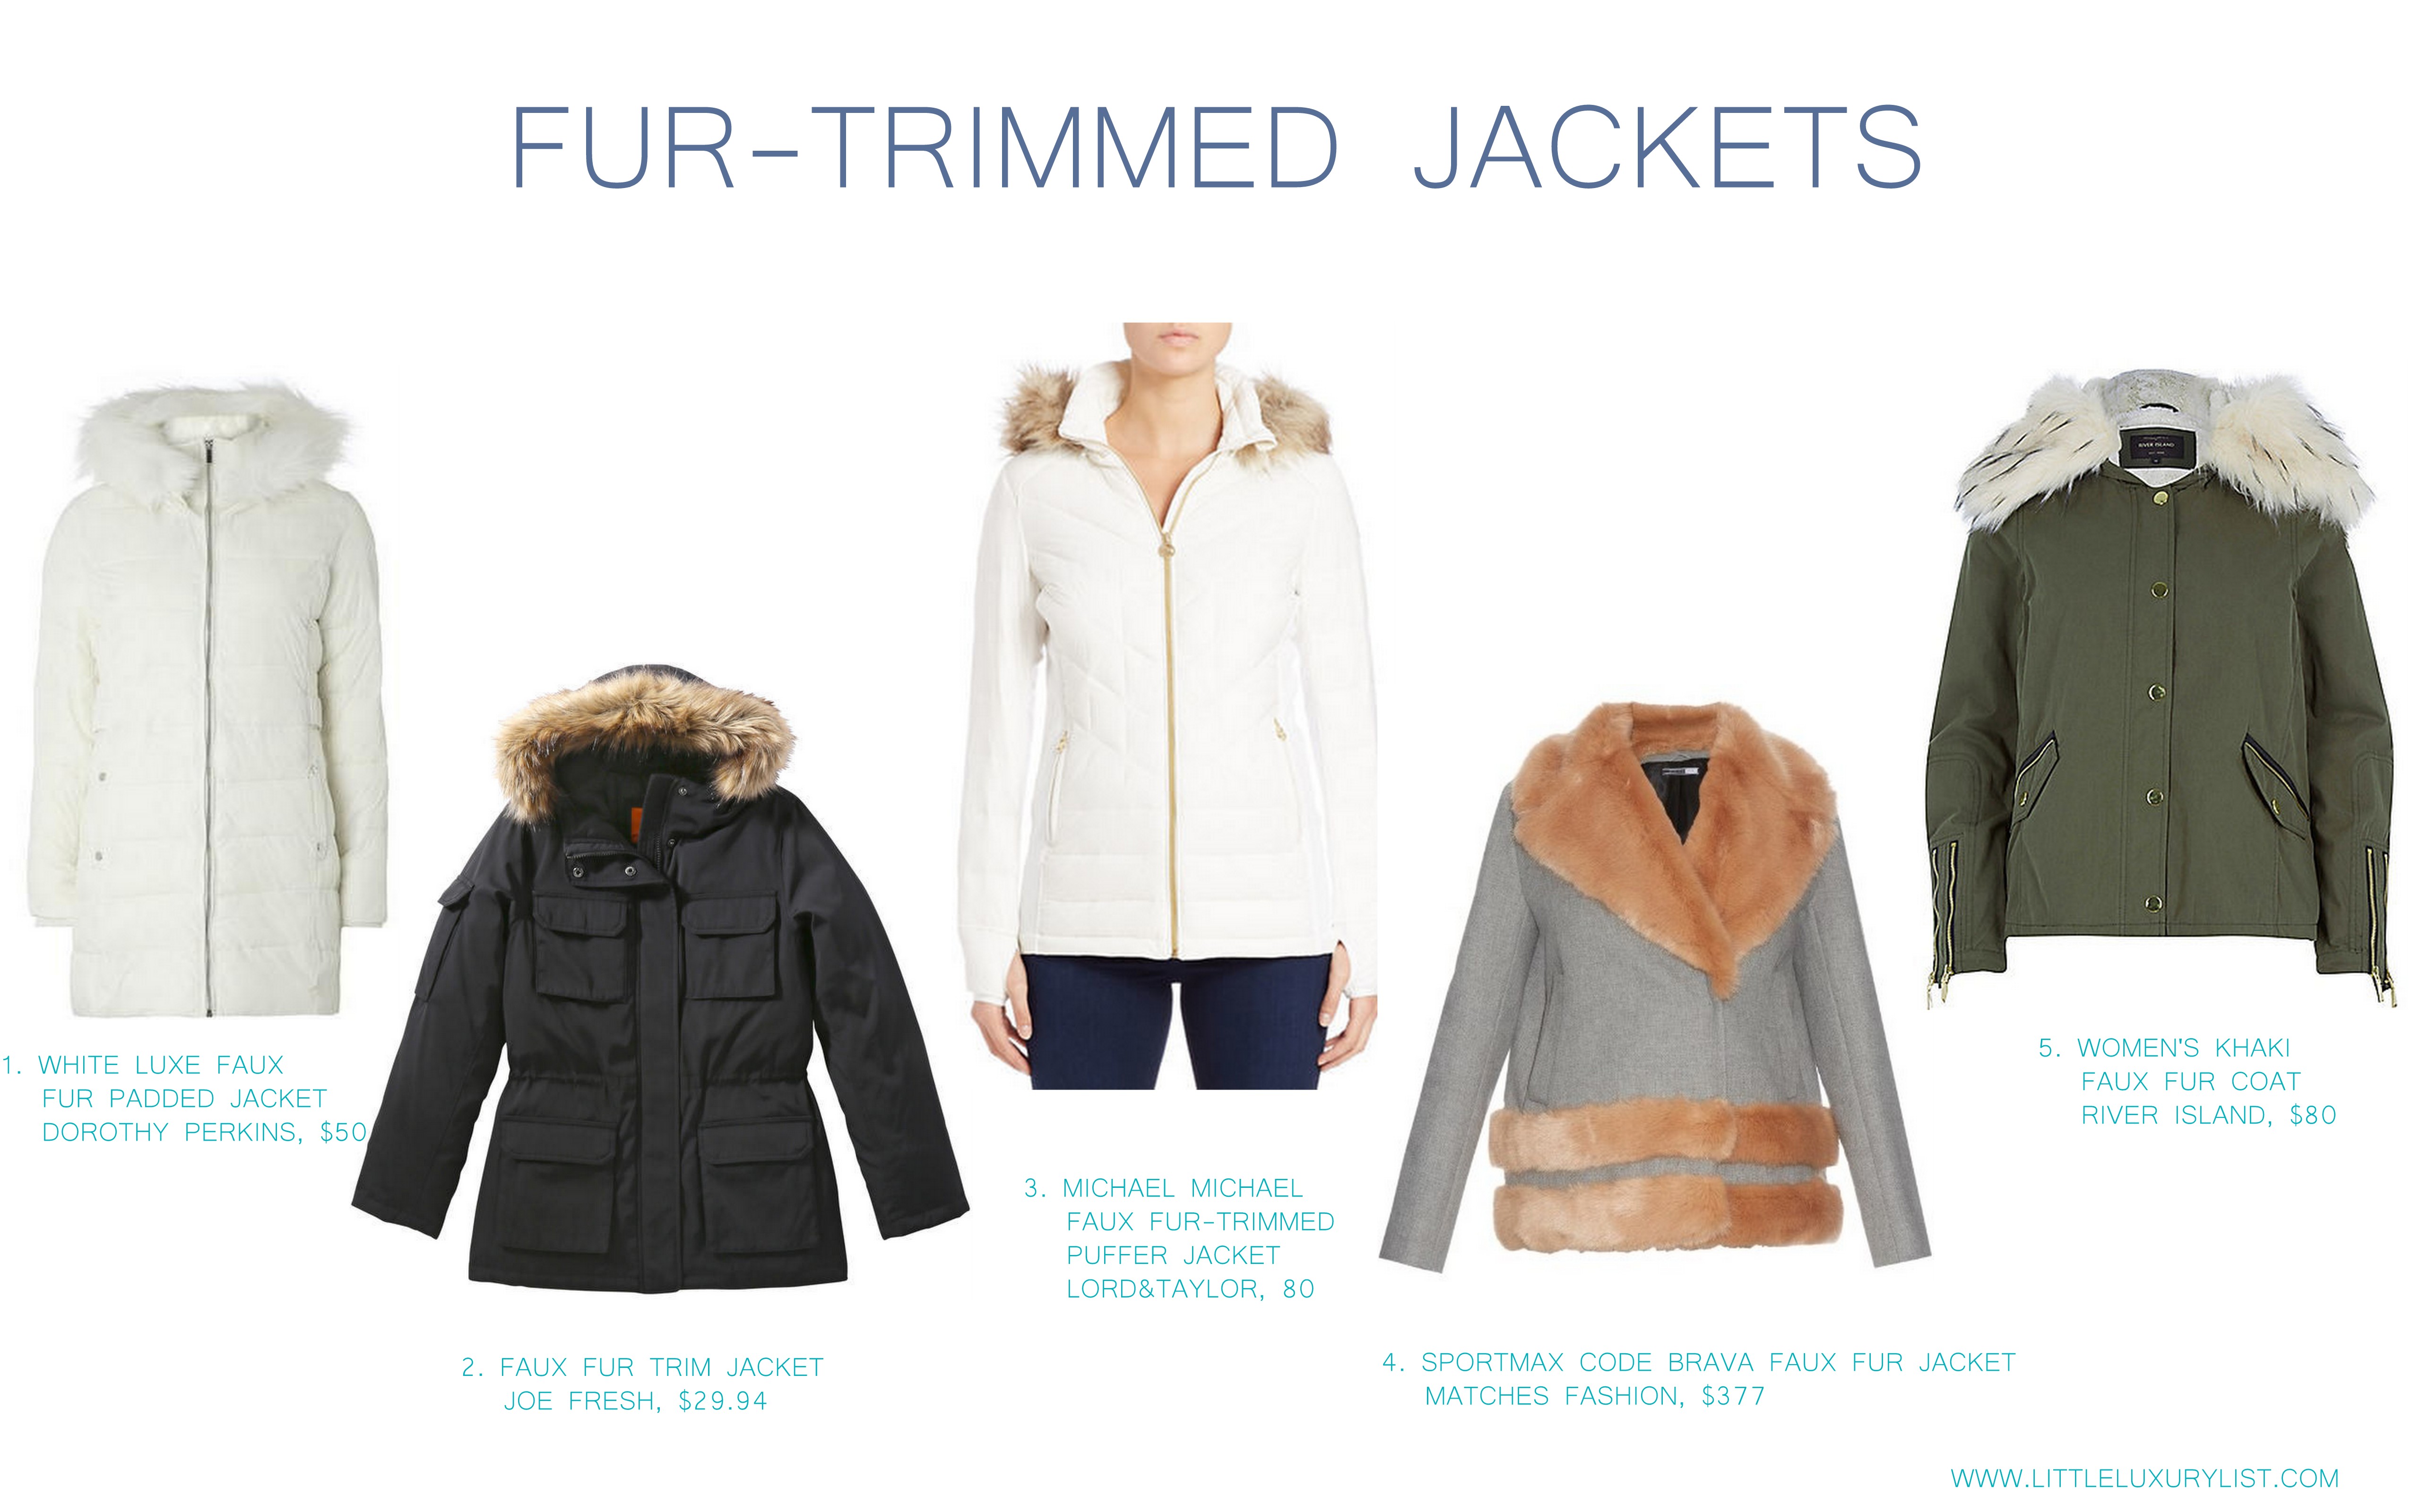 Fur trimmed jackets by little luxury list